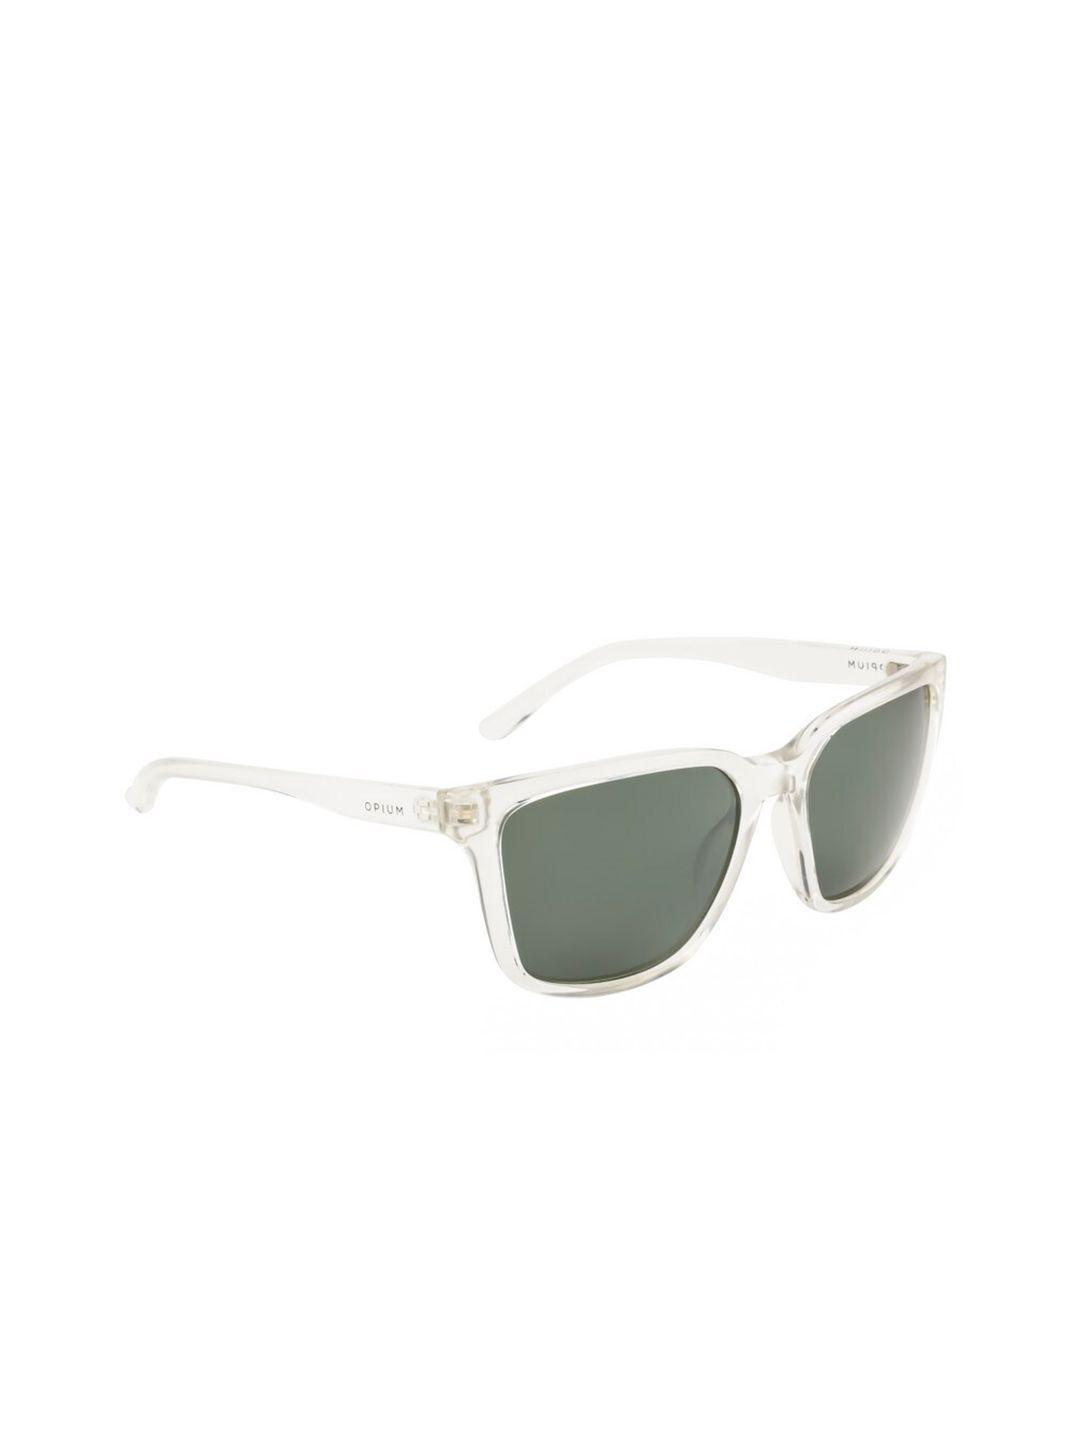 opium men green lens & white wayfarer sunglasses with uv protected lens